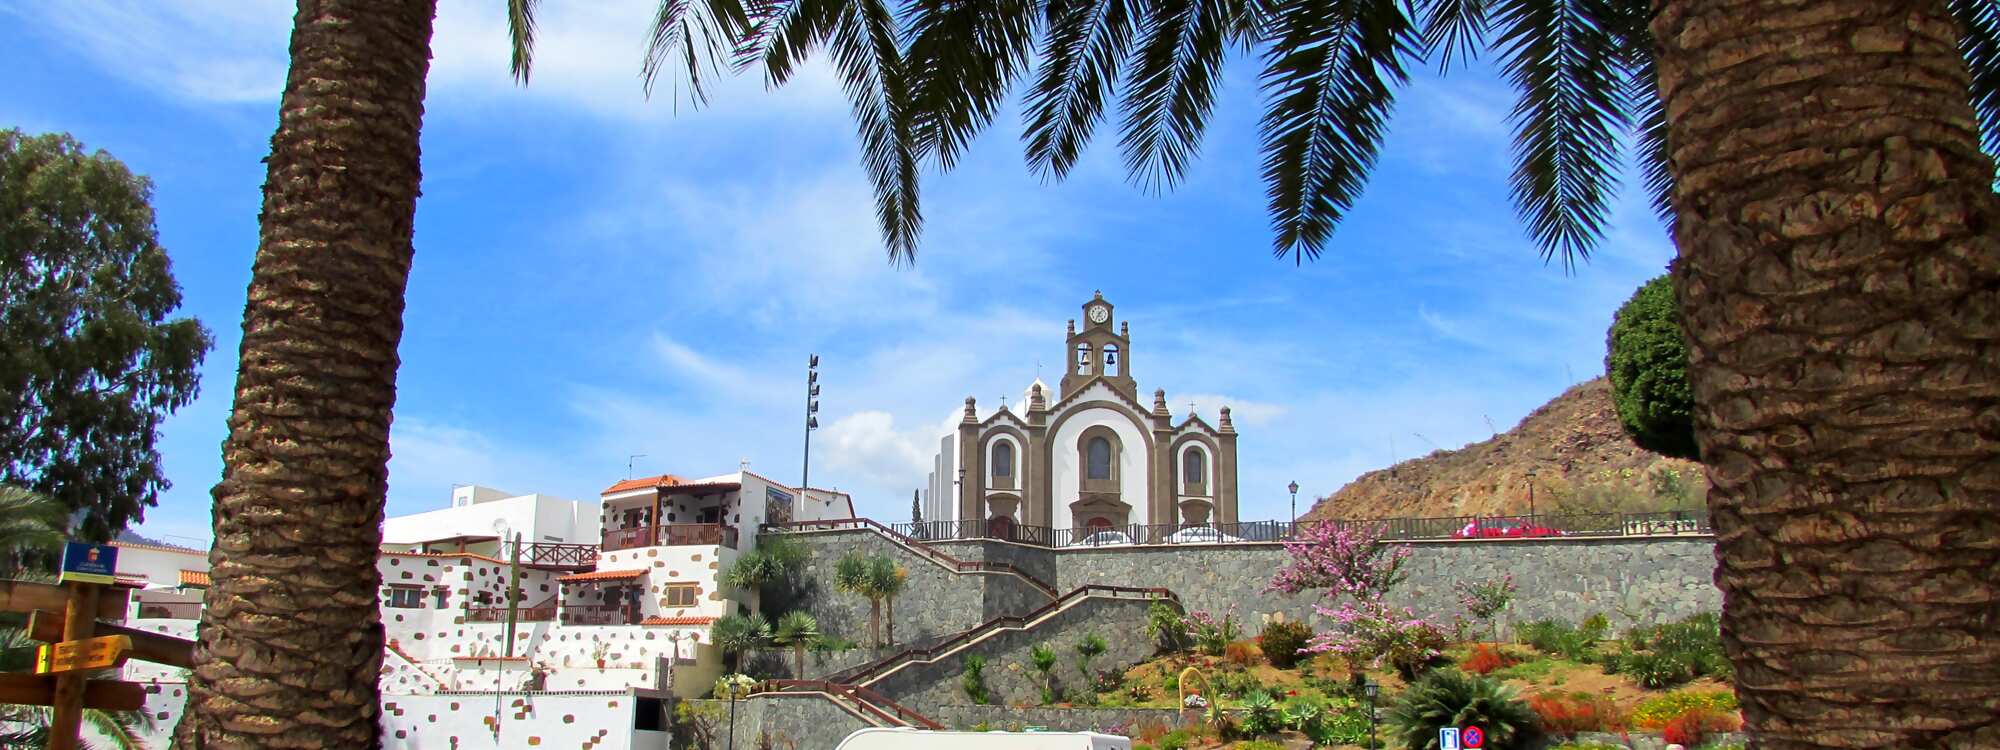 Santa Lucía de Tirajana ist ein verschlafener, typisch kanarischer Ort welcher eine wichtige historische Bedeutung hat.